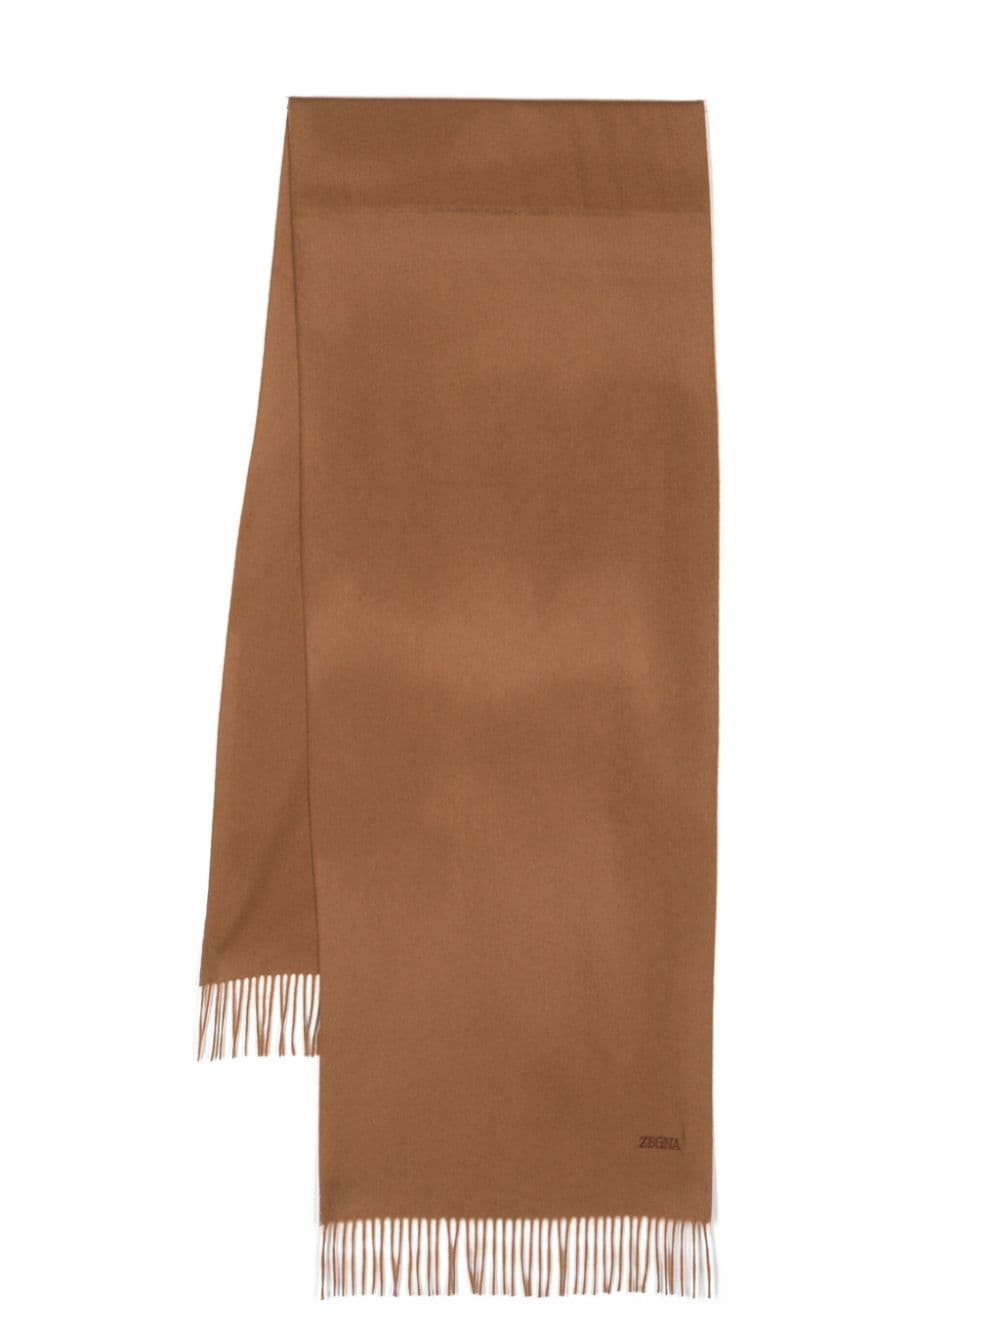 Zegna fringed-edge cashmere scarf - Brown von Zegna